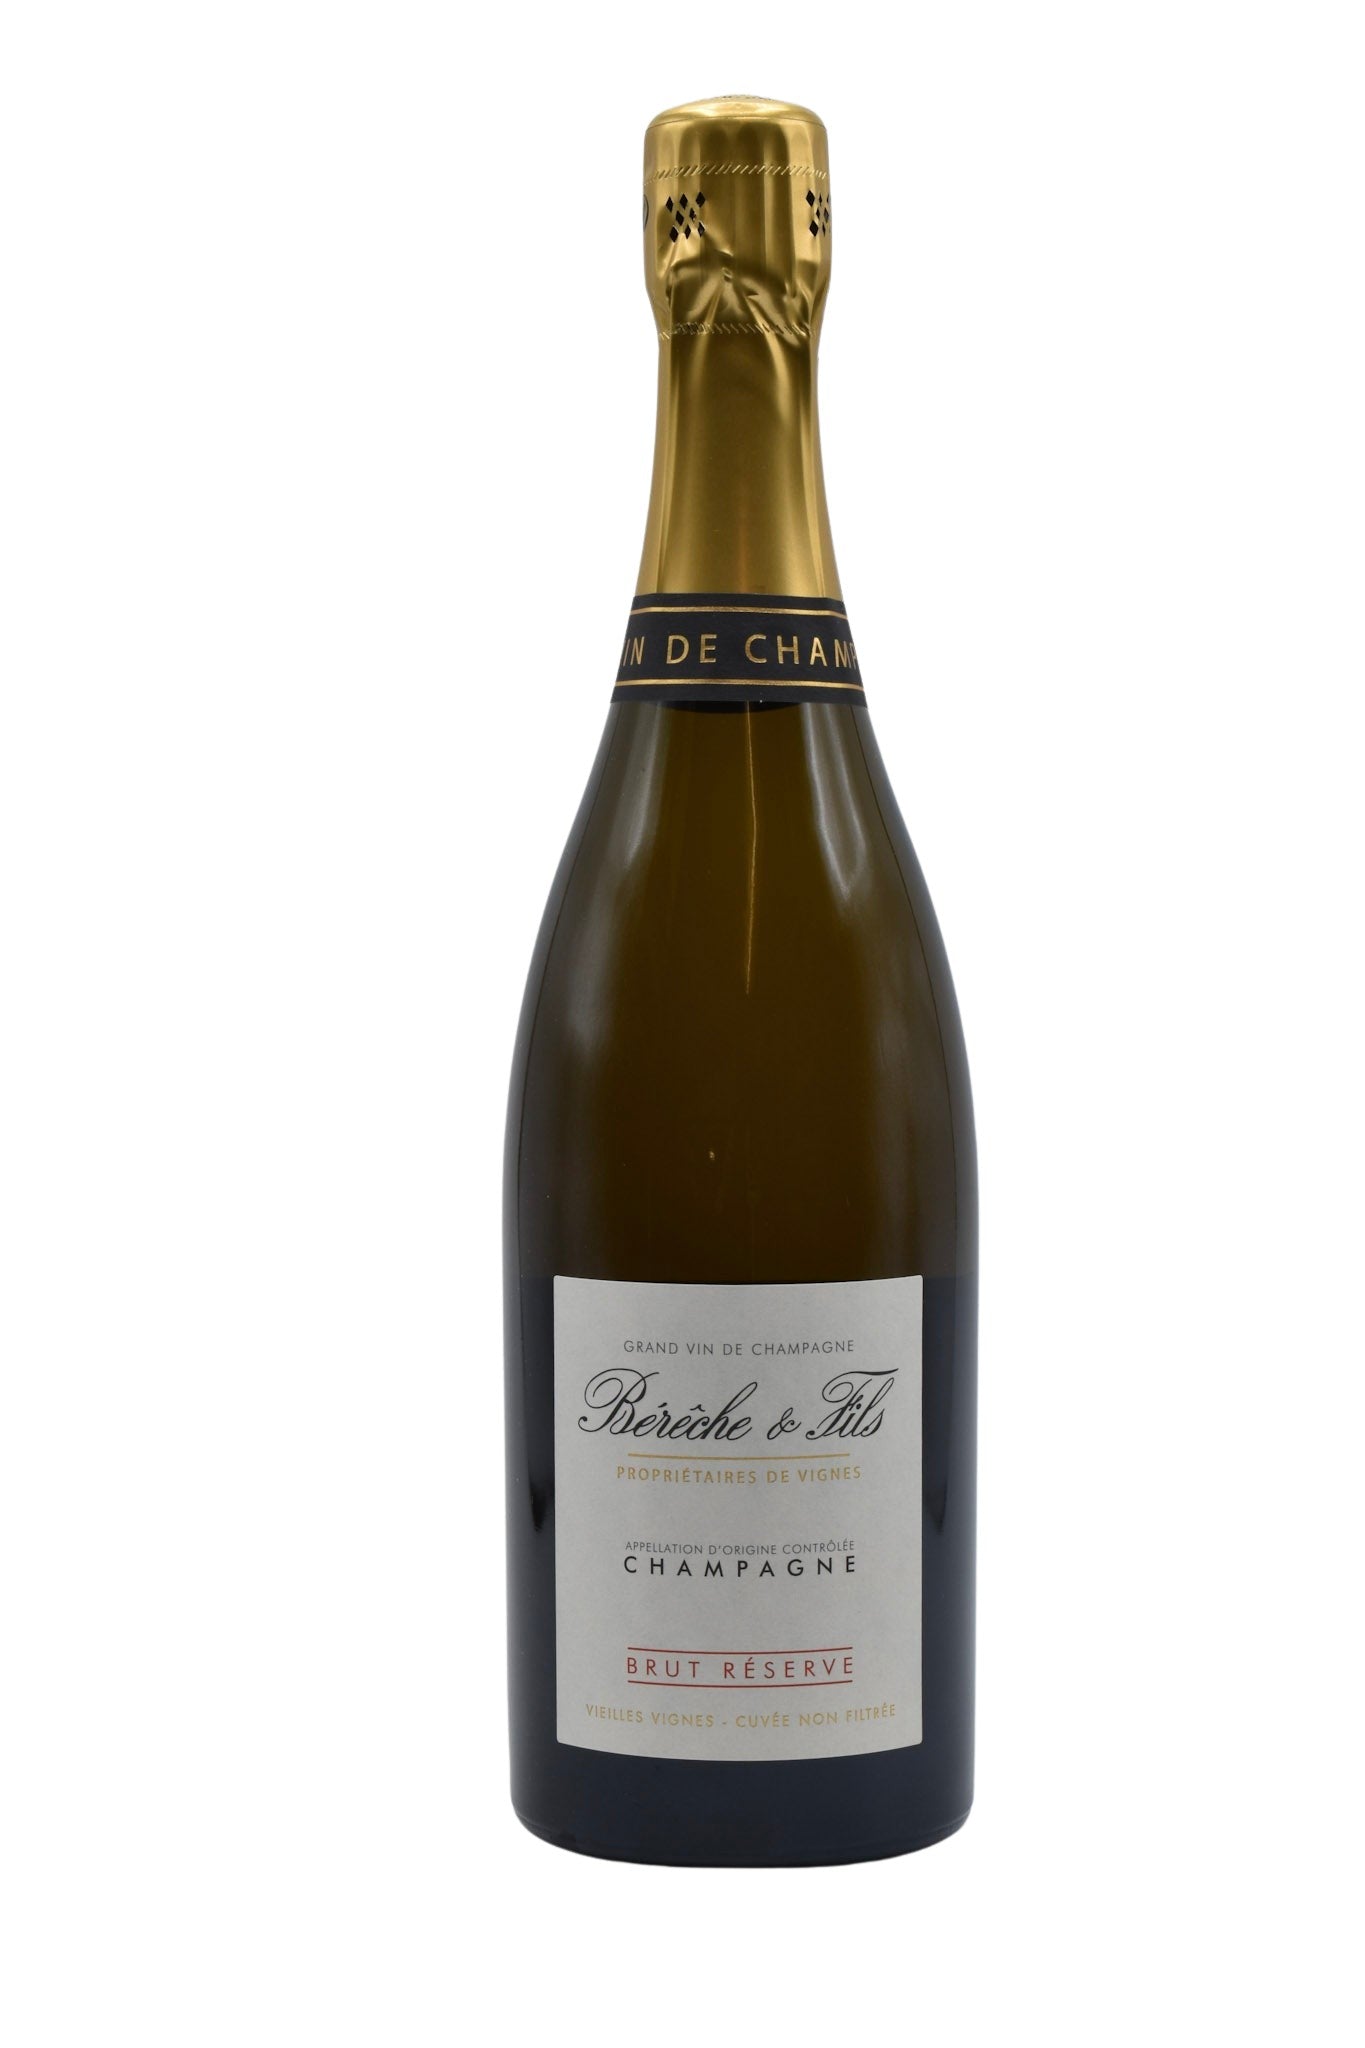 NV Bereche, Brut Reserve Champagne 750ml